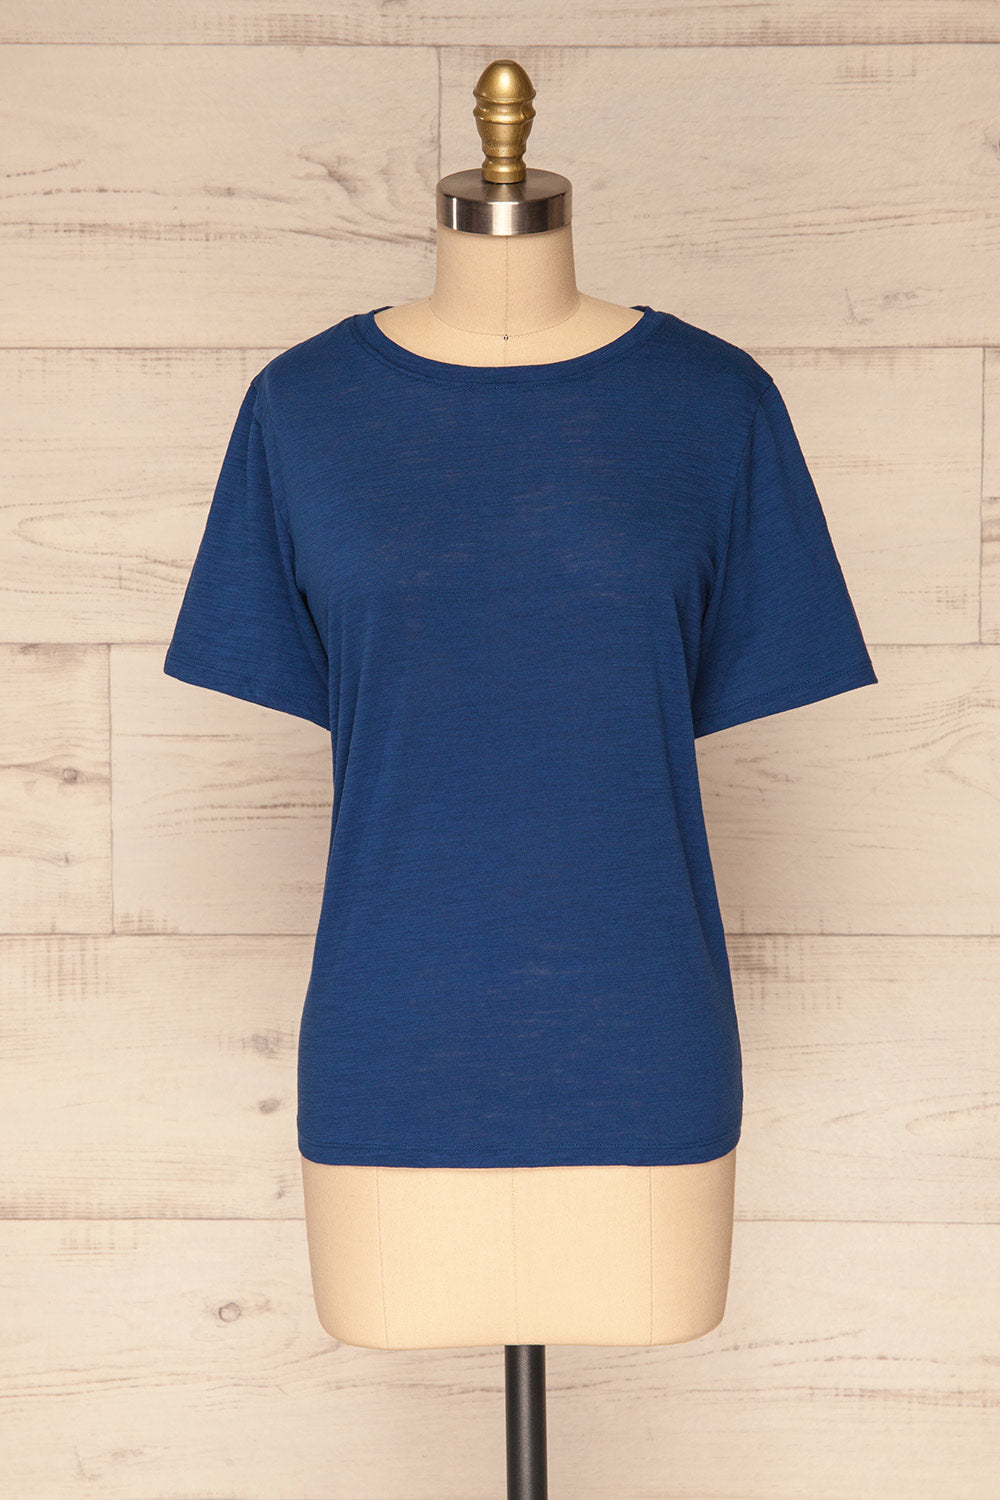 Digranes Blue T-Shirt | La Petite Garçonne front view 